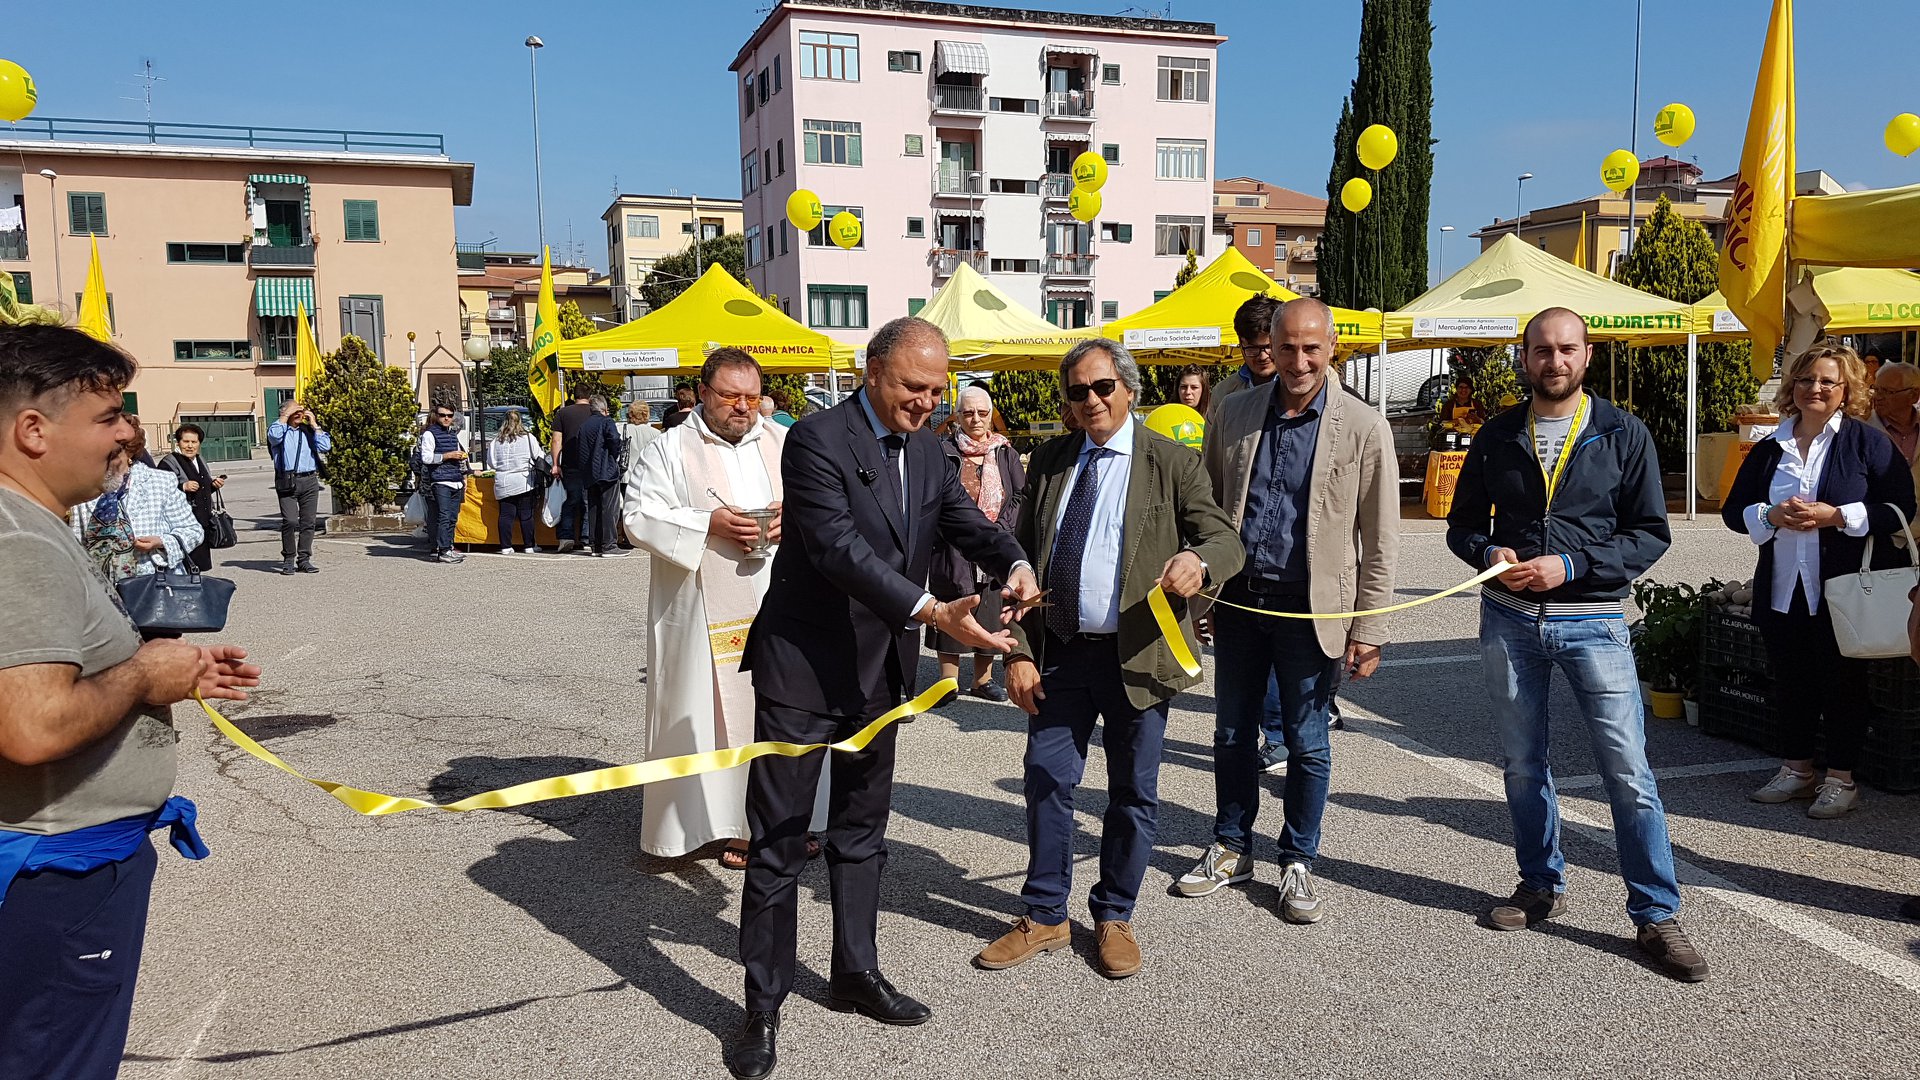 Benevento| Coldiretti inaugura il nuovo mercato di Campagna Amica